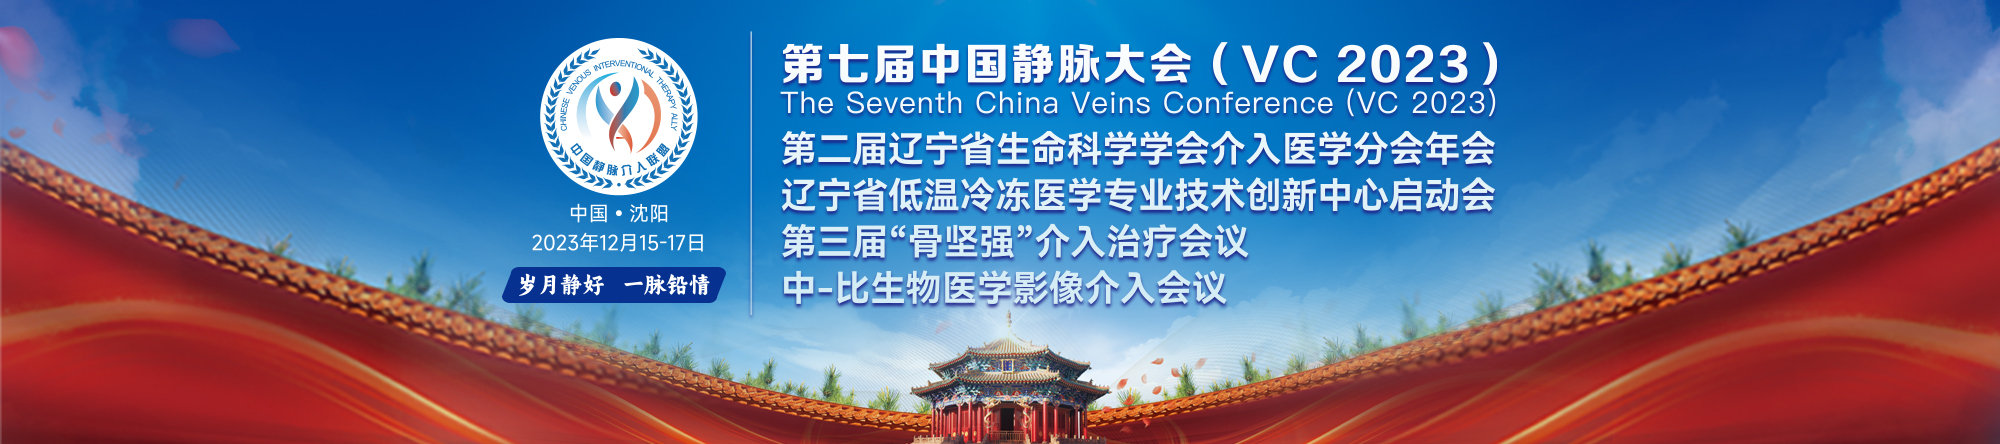 2023第七届中国静脉大会(VC 2023)